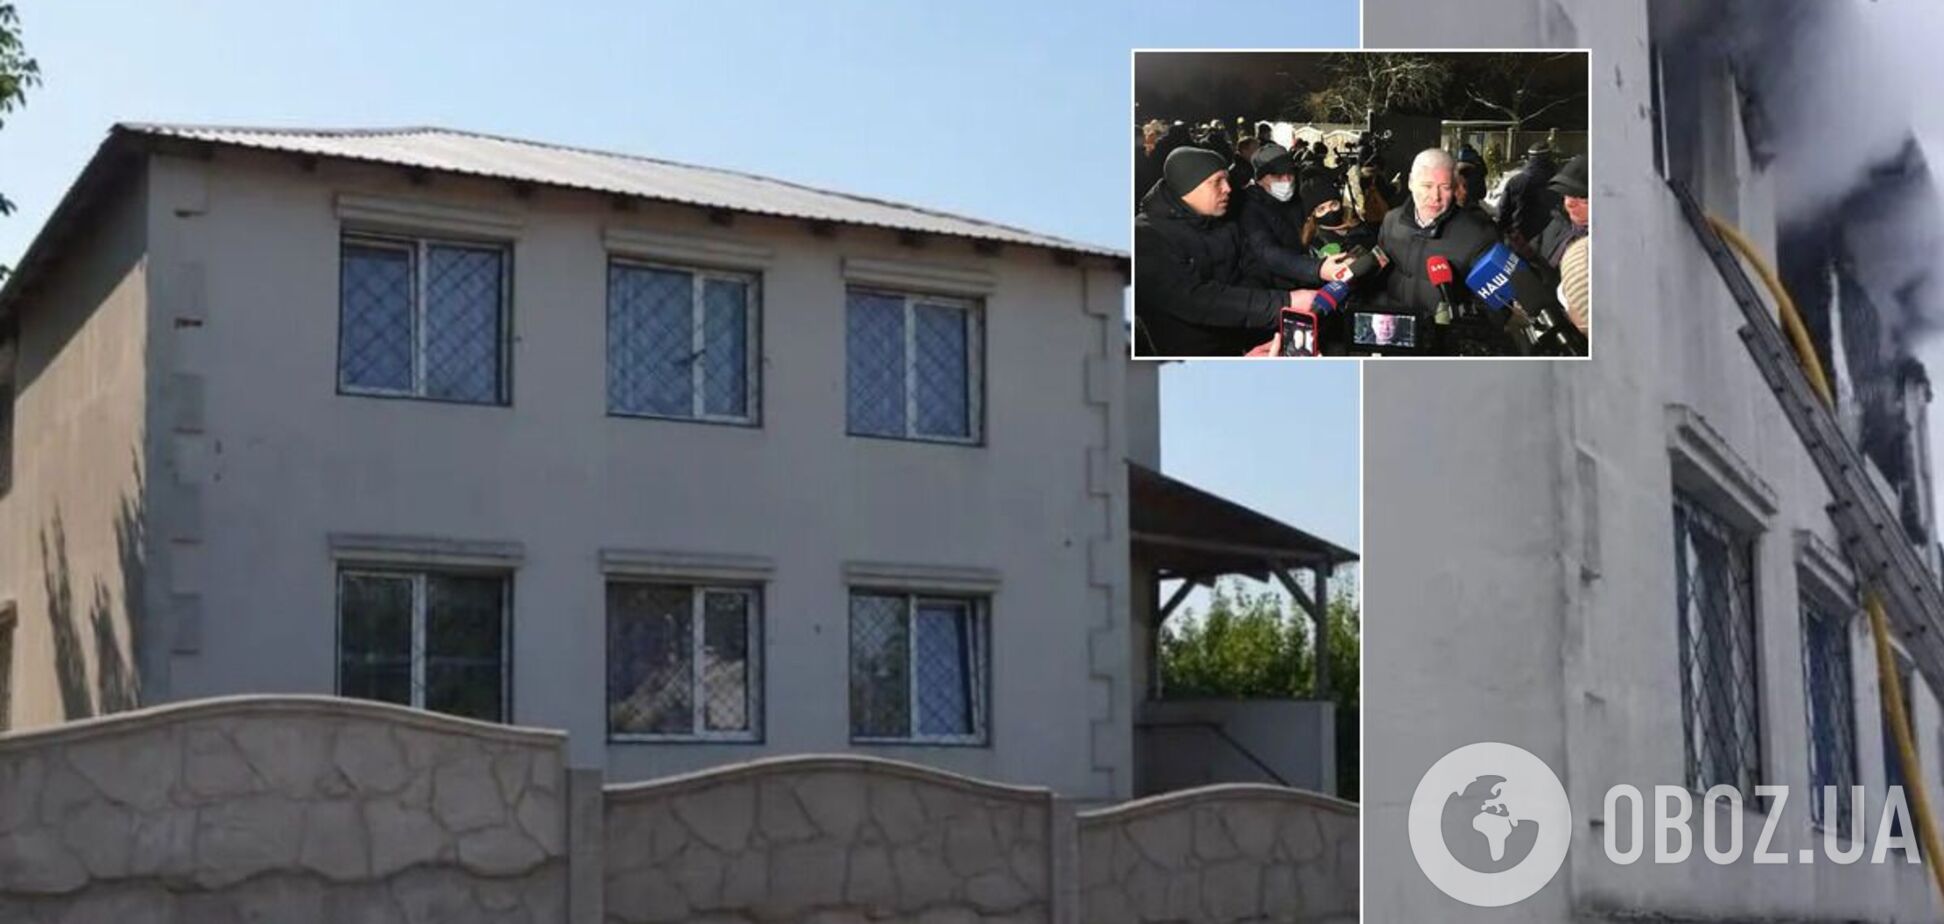 Дом престарелых в Харькове работал нелегально: названа возможная причина пожара